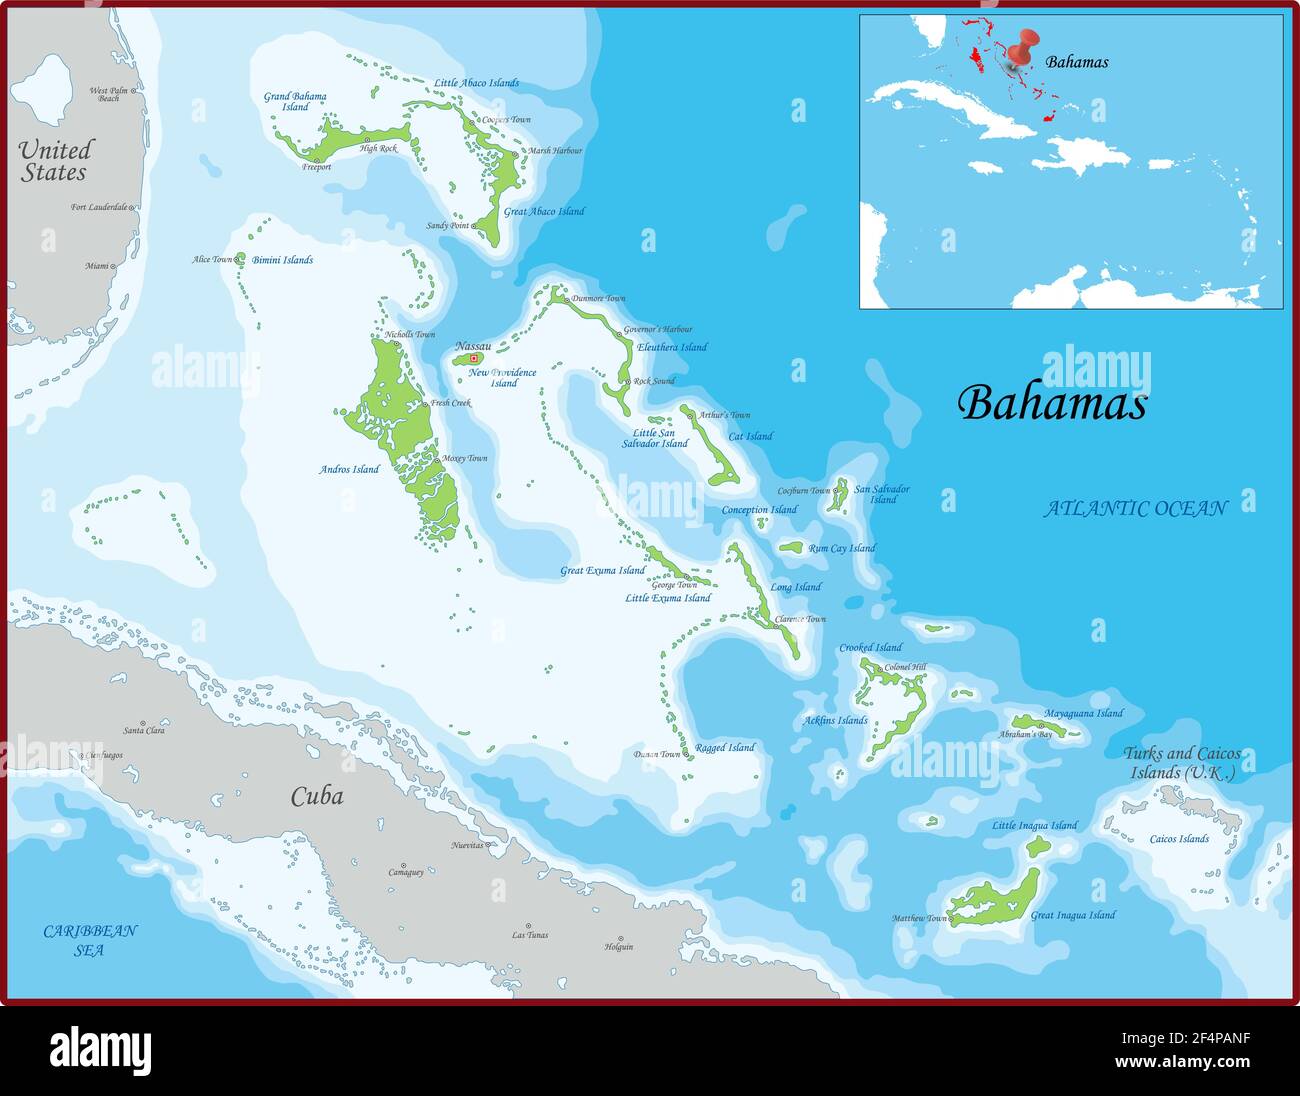 La carte des Bahamas a été dessinée avec un niveau de détail et de précision élevé Illustration de Vecteur